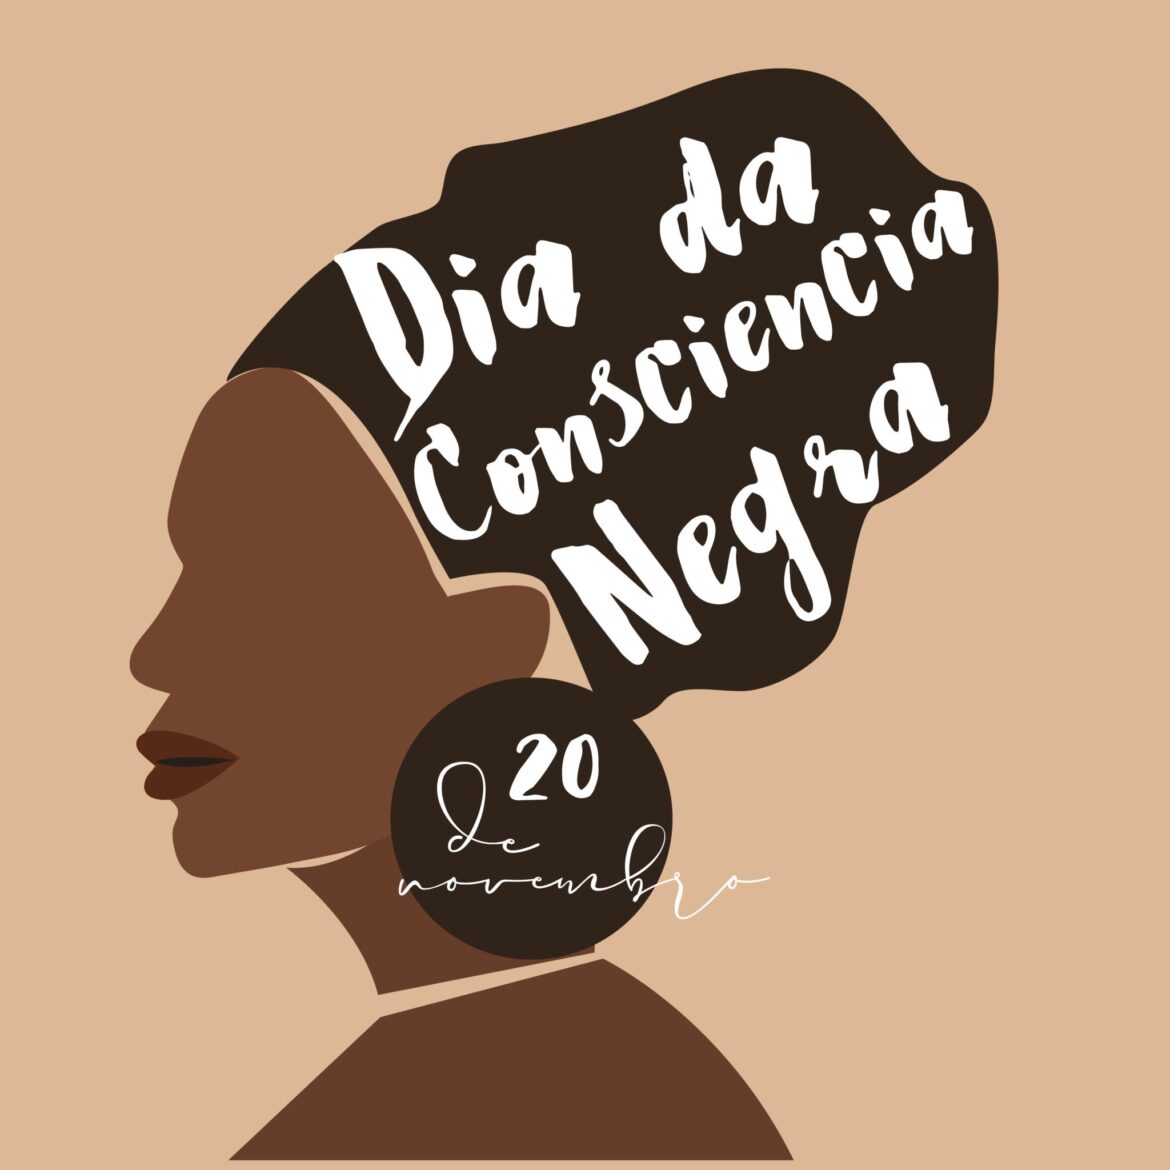 CMV Celebra a Diversidade: Sessão Solene em Homenagem ao Dia da Consciência Negra!